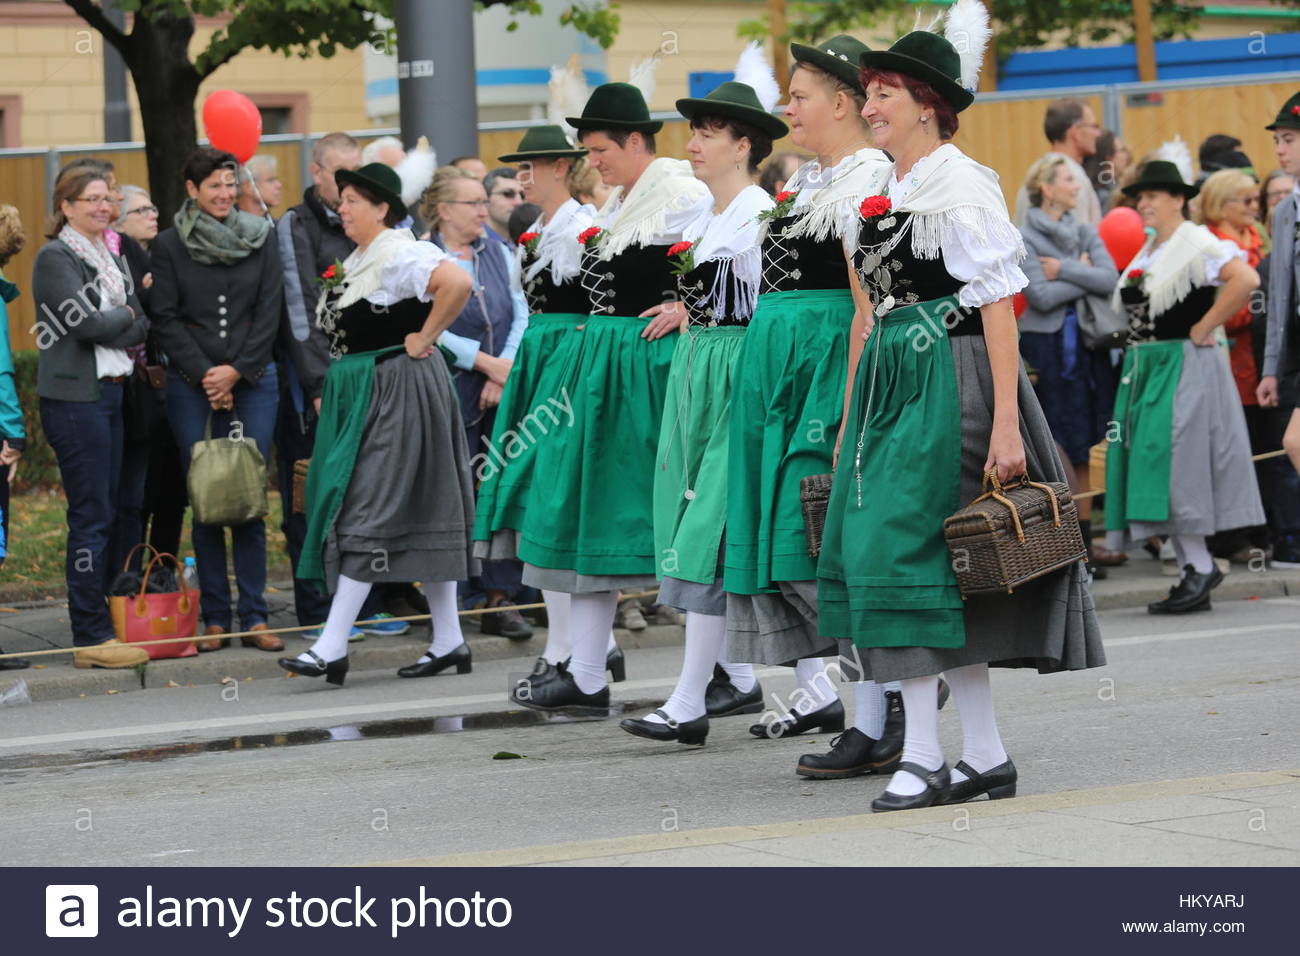 Frauen gekleidet in traditionellen Kleidern bekannt als Dirndl während der Oktoberfest-Parade gehen. Stockfoto